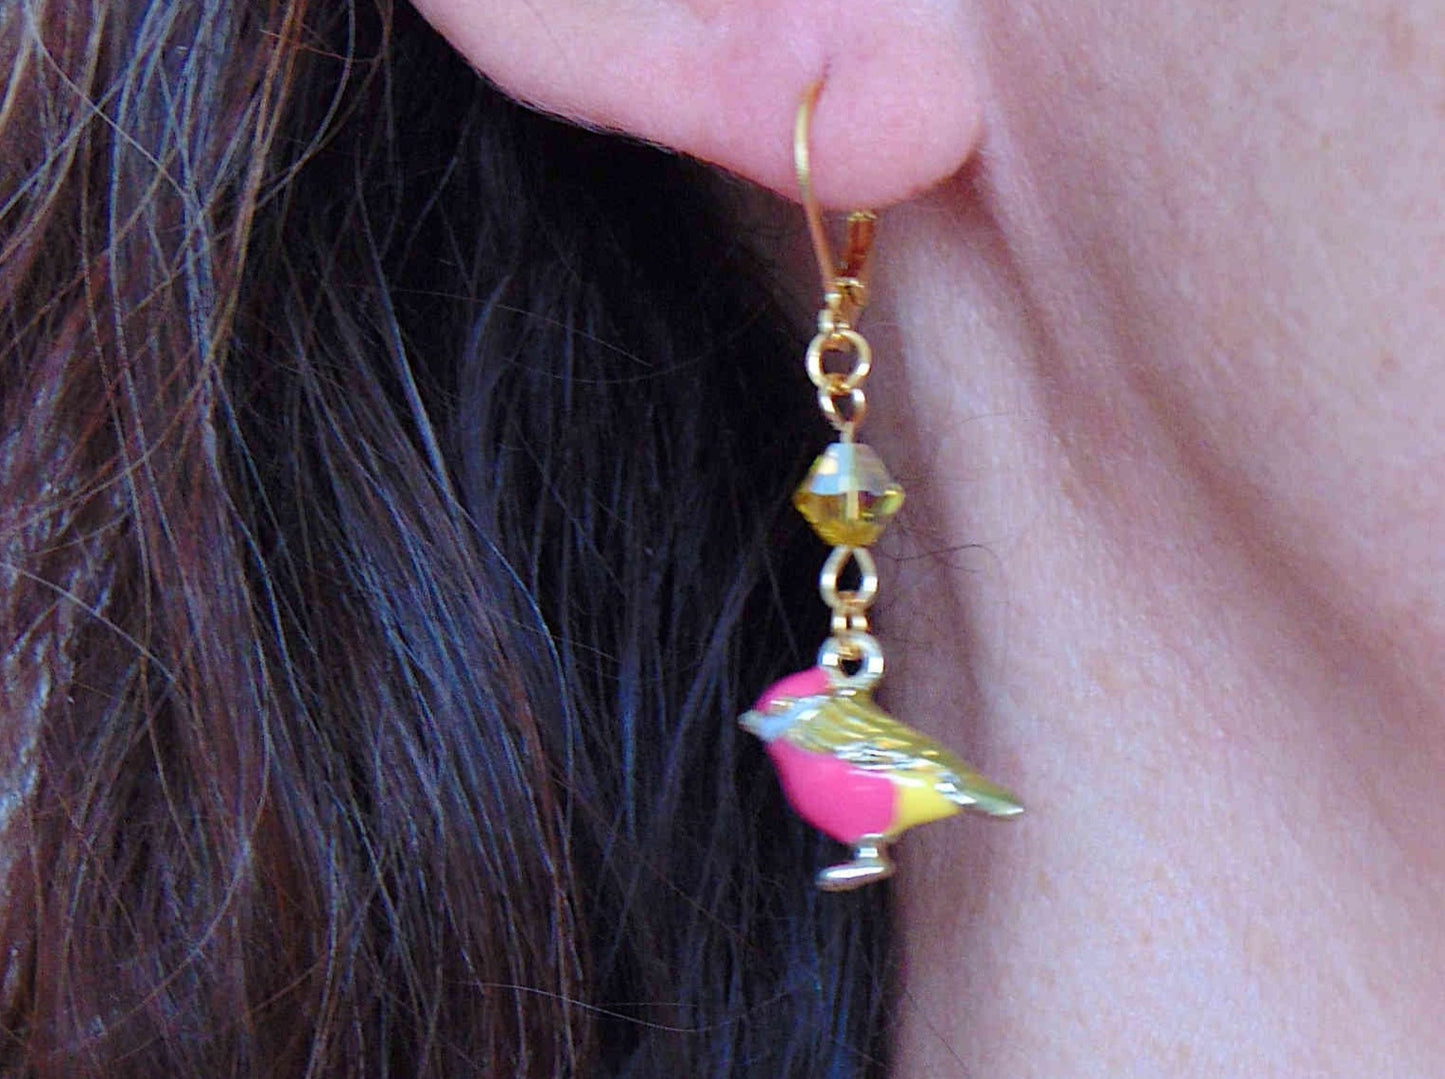 Boucles d'oreilles courtes petits oiseaux dodus émaillés en 2 couleurs, cristaux Swarovski, crochets à levier acier inoxydable doré